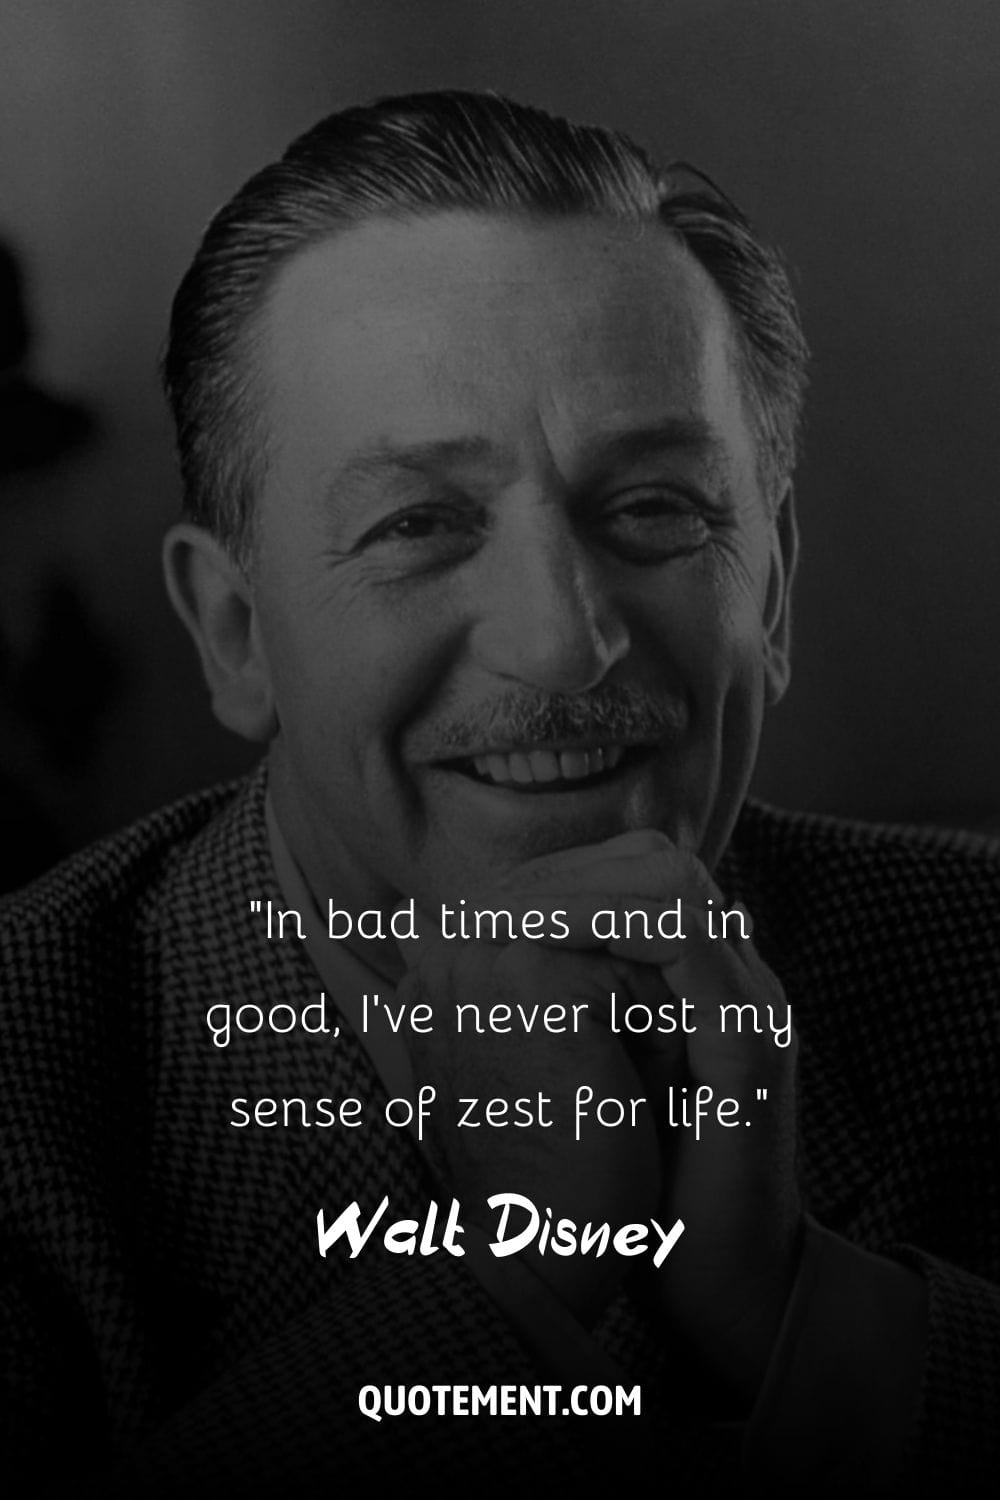 La cautivadora sonrisa de Walt Disney brilla en el retrato.